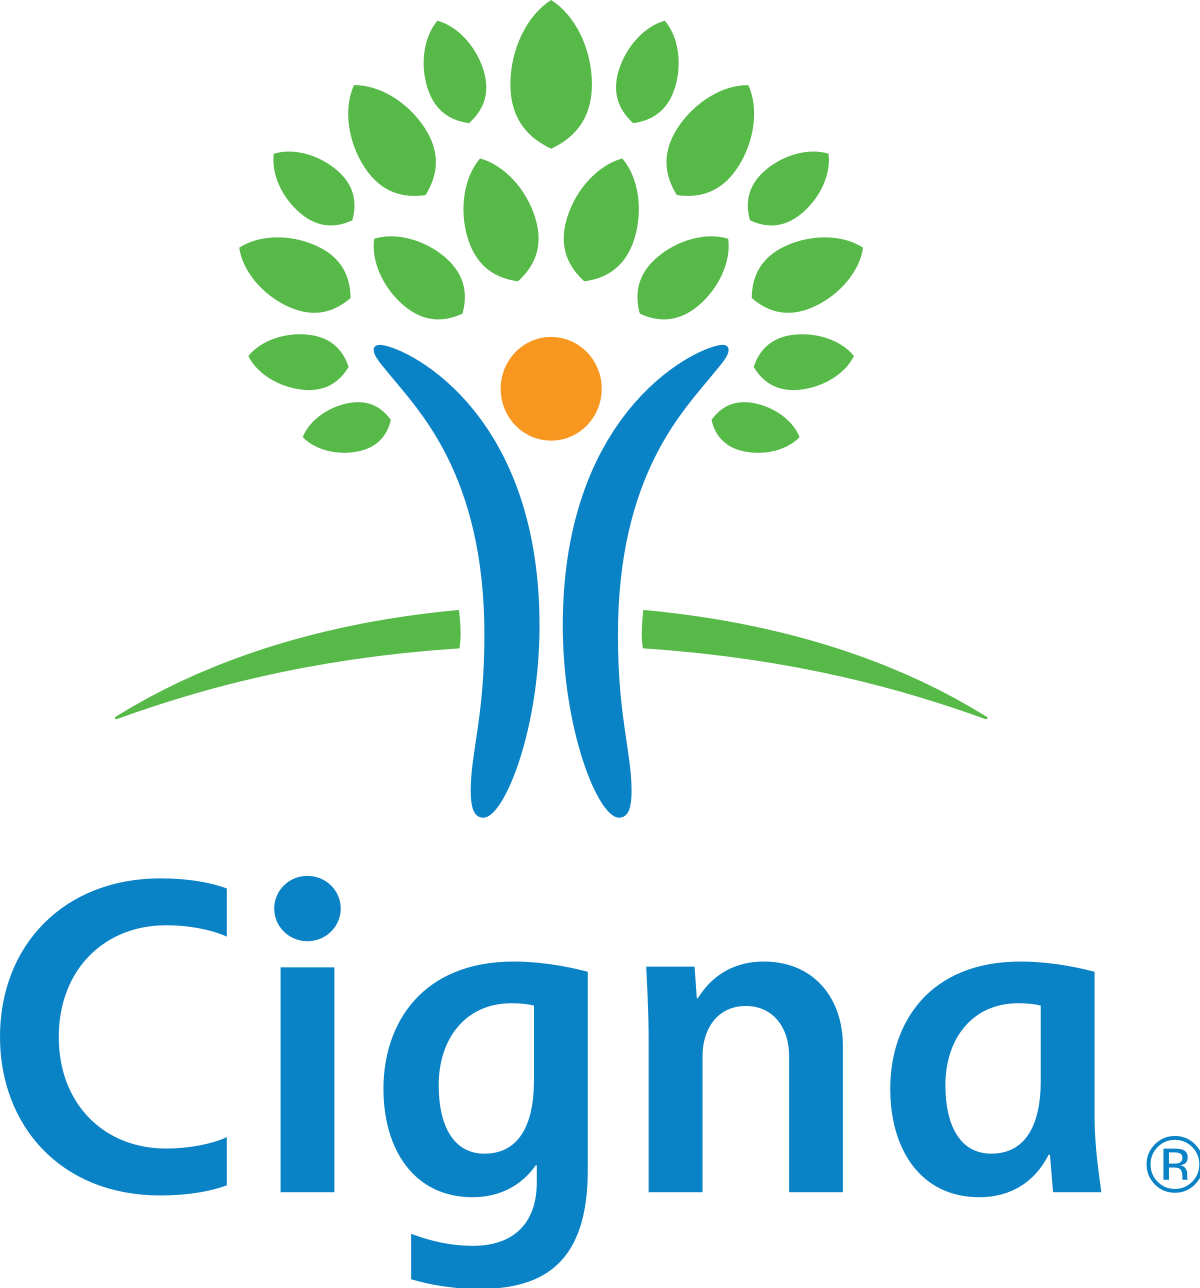 https://specializednj.com/wp-content/uploads/2021/01/1200px-Cigna_logo.svg.png